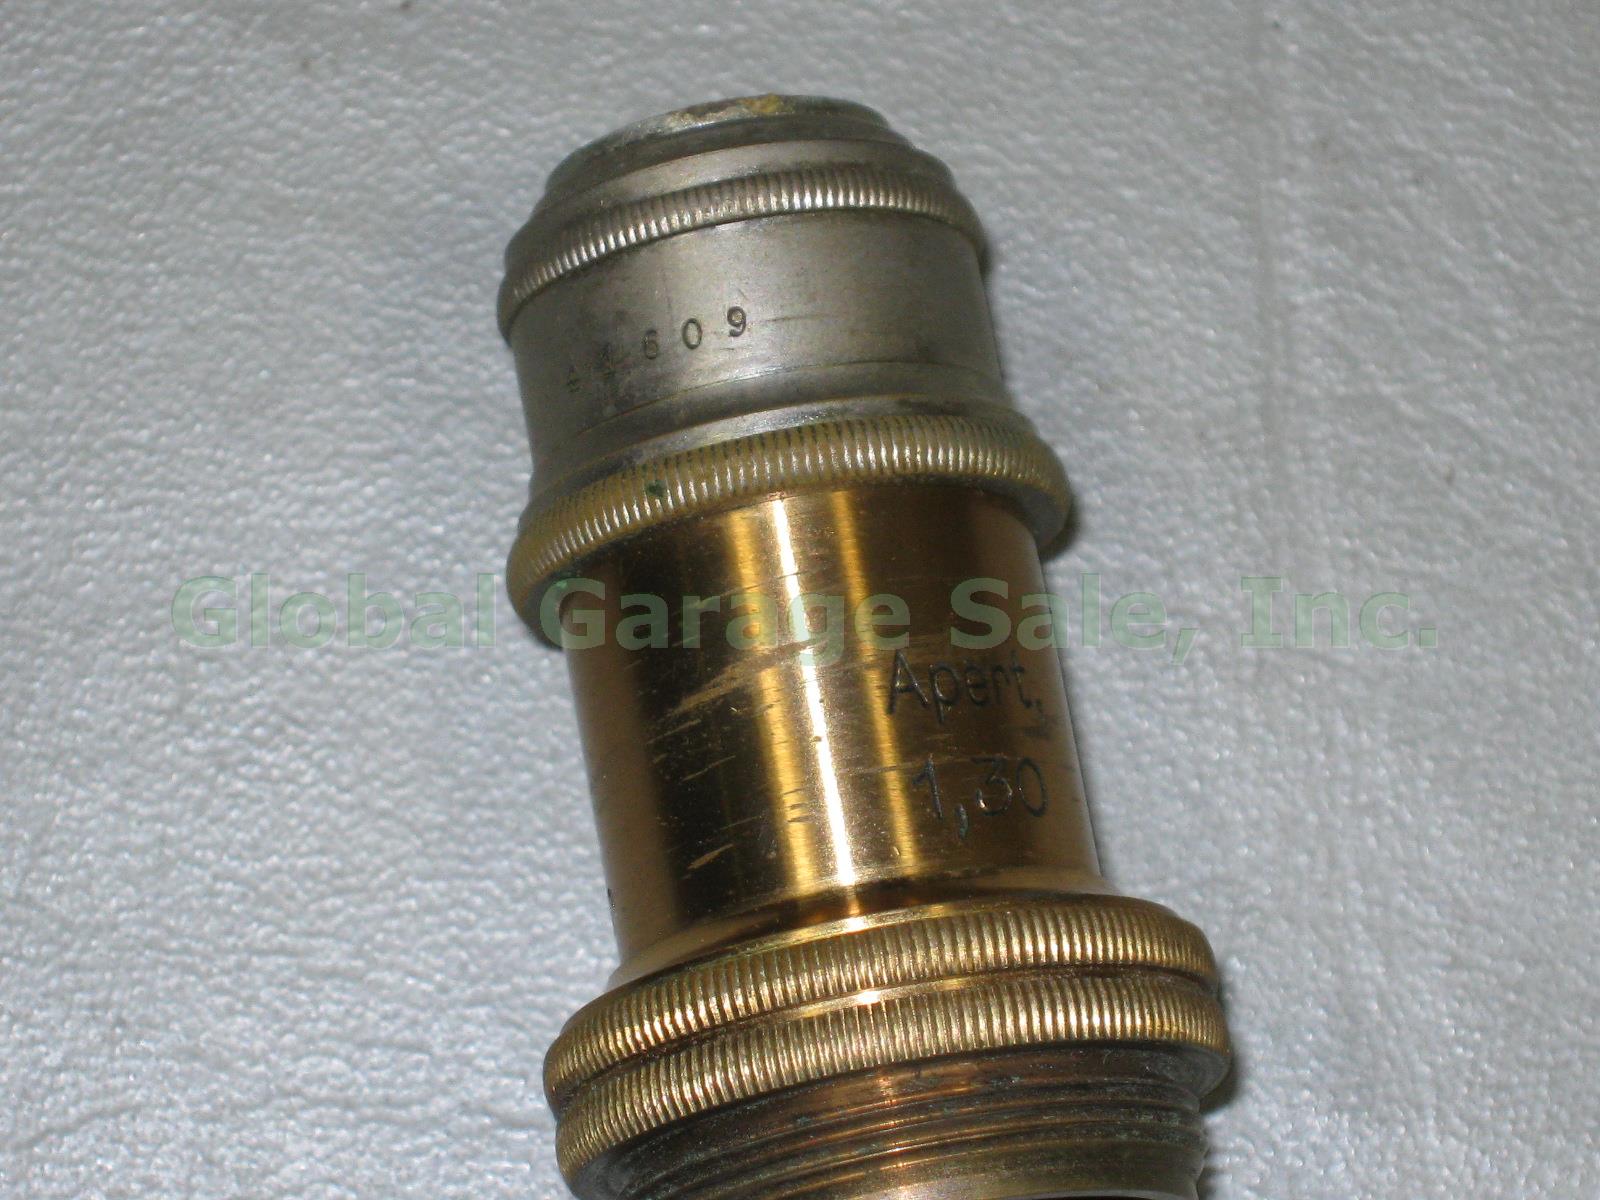 Vtg Antique E Leitz Wetzlar Brass Microscope 94062 Oil Immersion Objective +Case 15